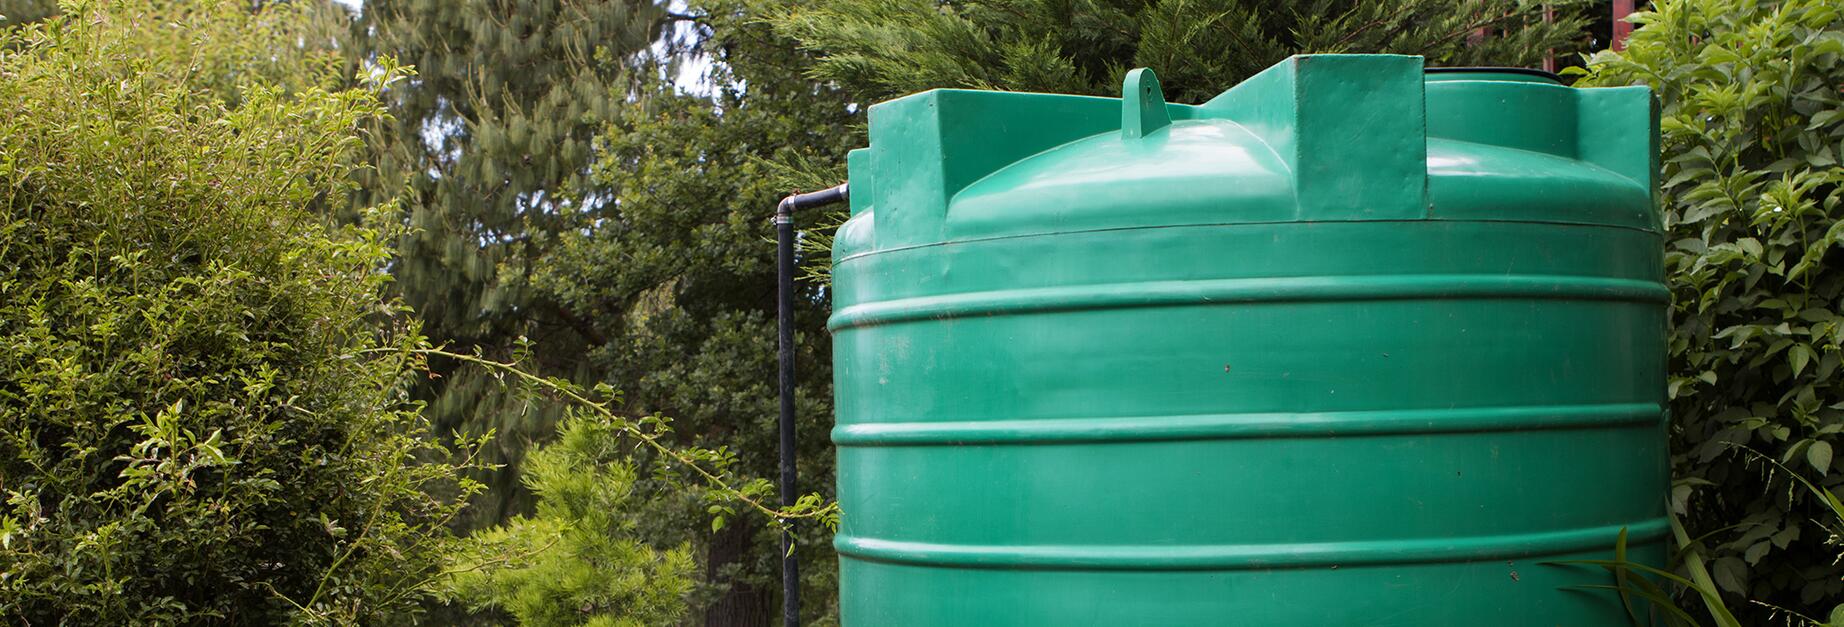 Comment installer un récupérateur d'eau de pluie - Gamm vert